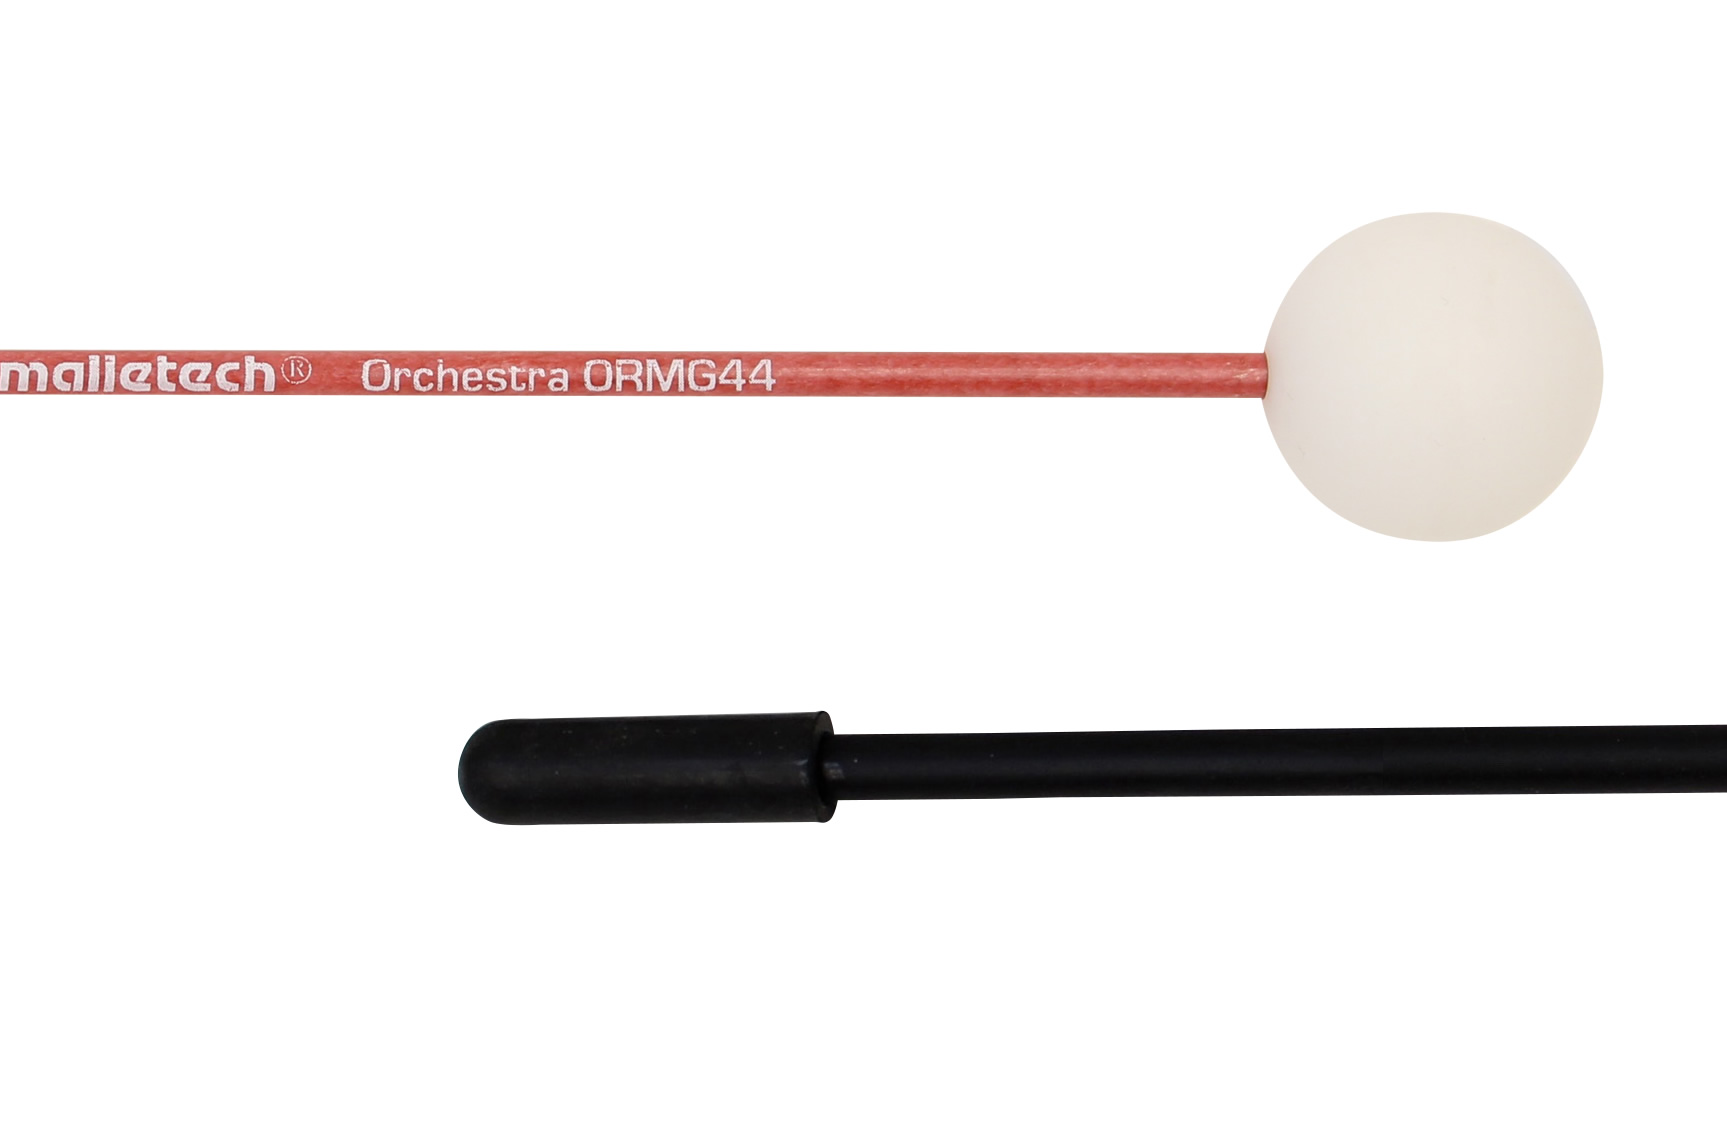 ORMG44 ホワイトボール／オーケストラ シリーズ グロッケンマレット